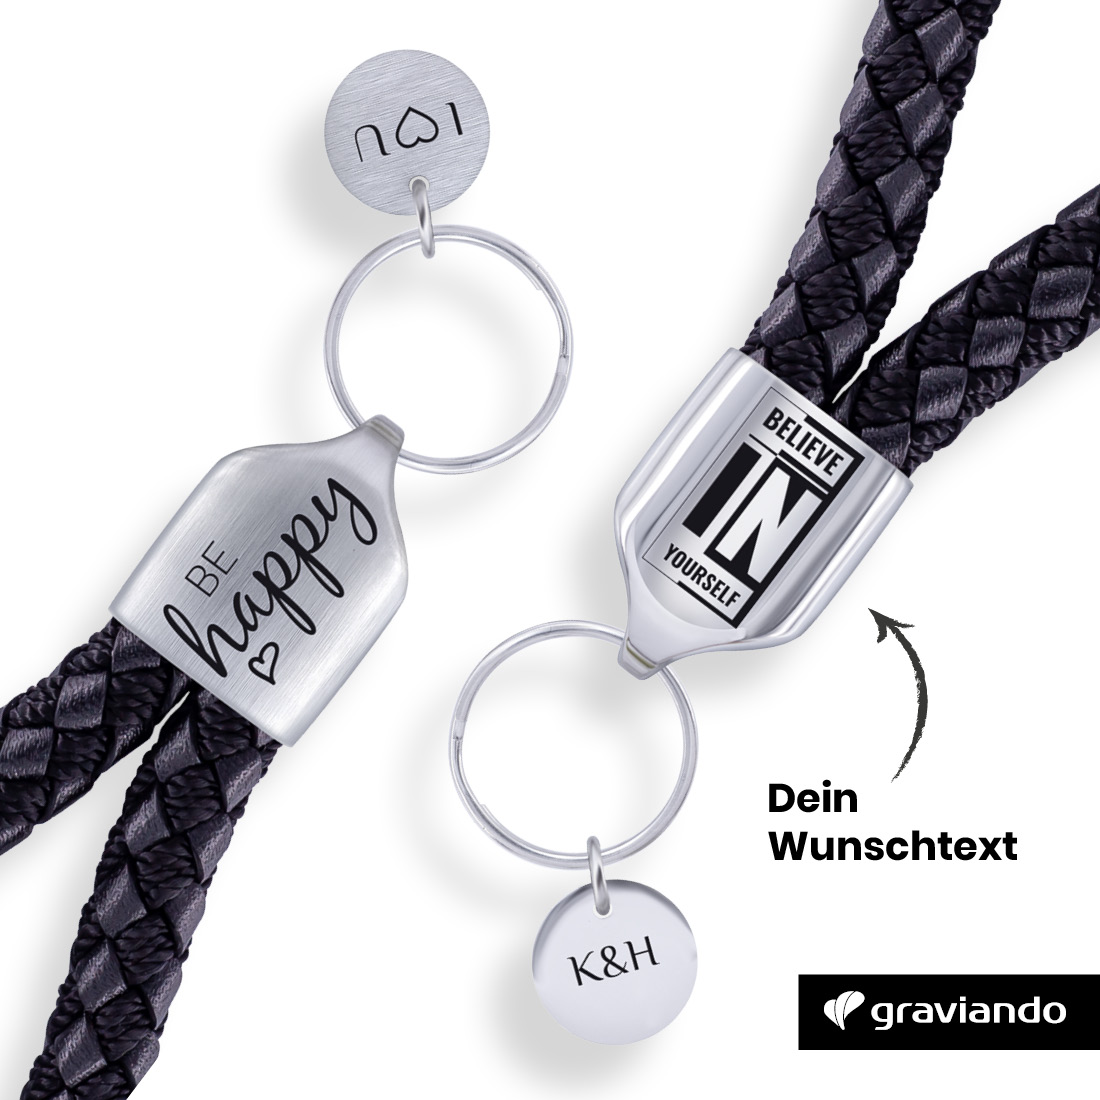 Schlüsselanhänger aus Leder und Metall in schwarz/glänzend silber inkl Gravur 